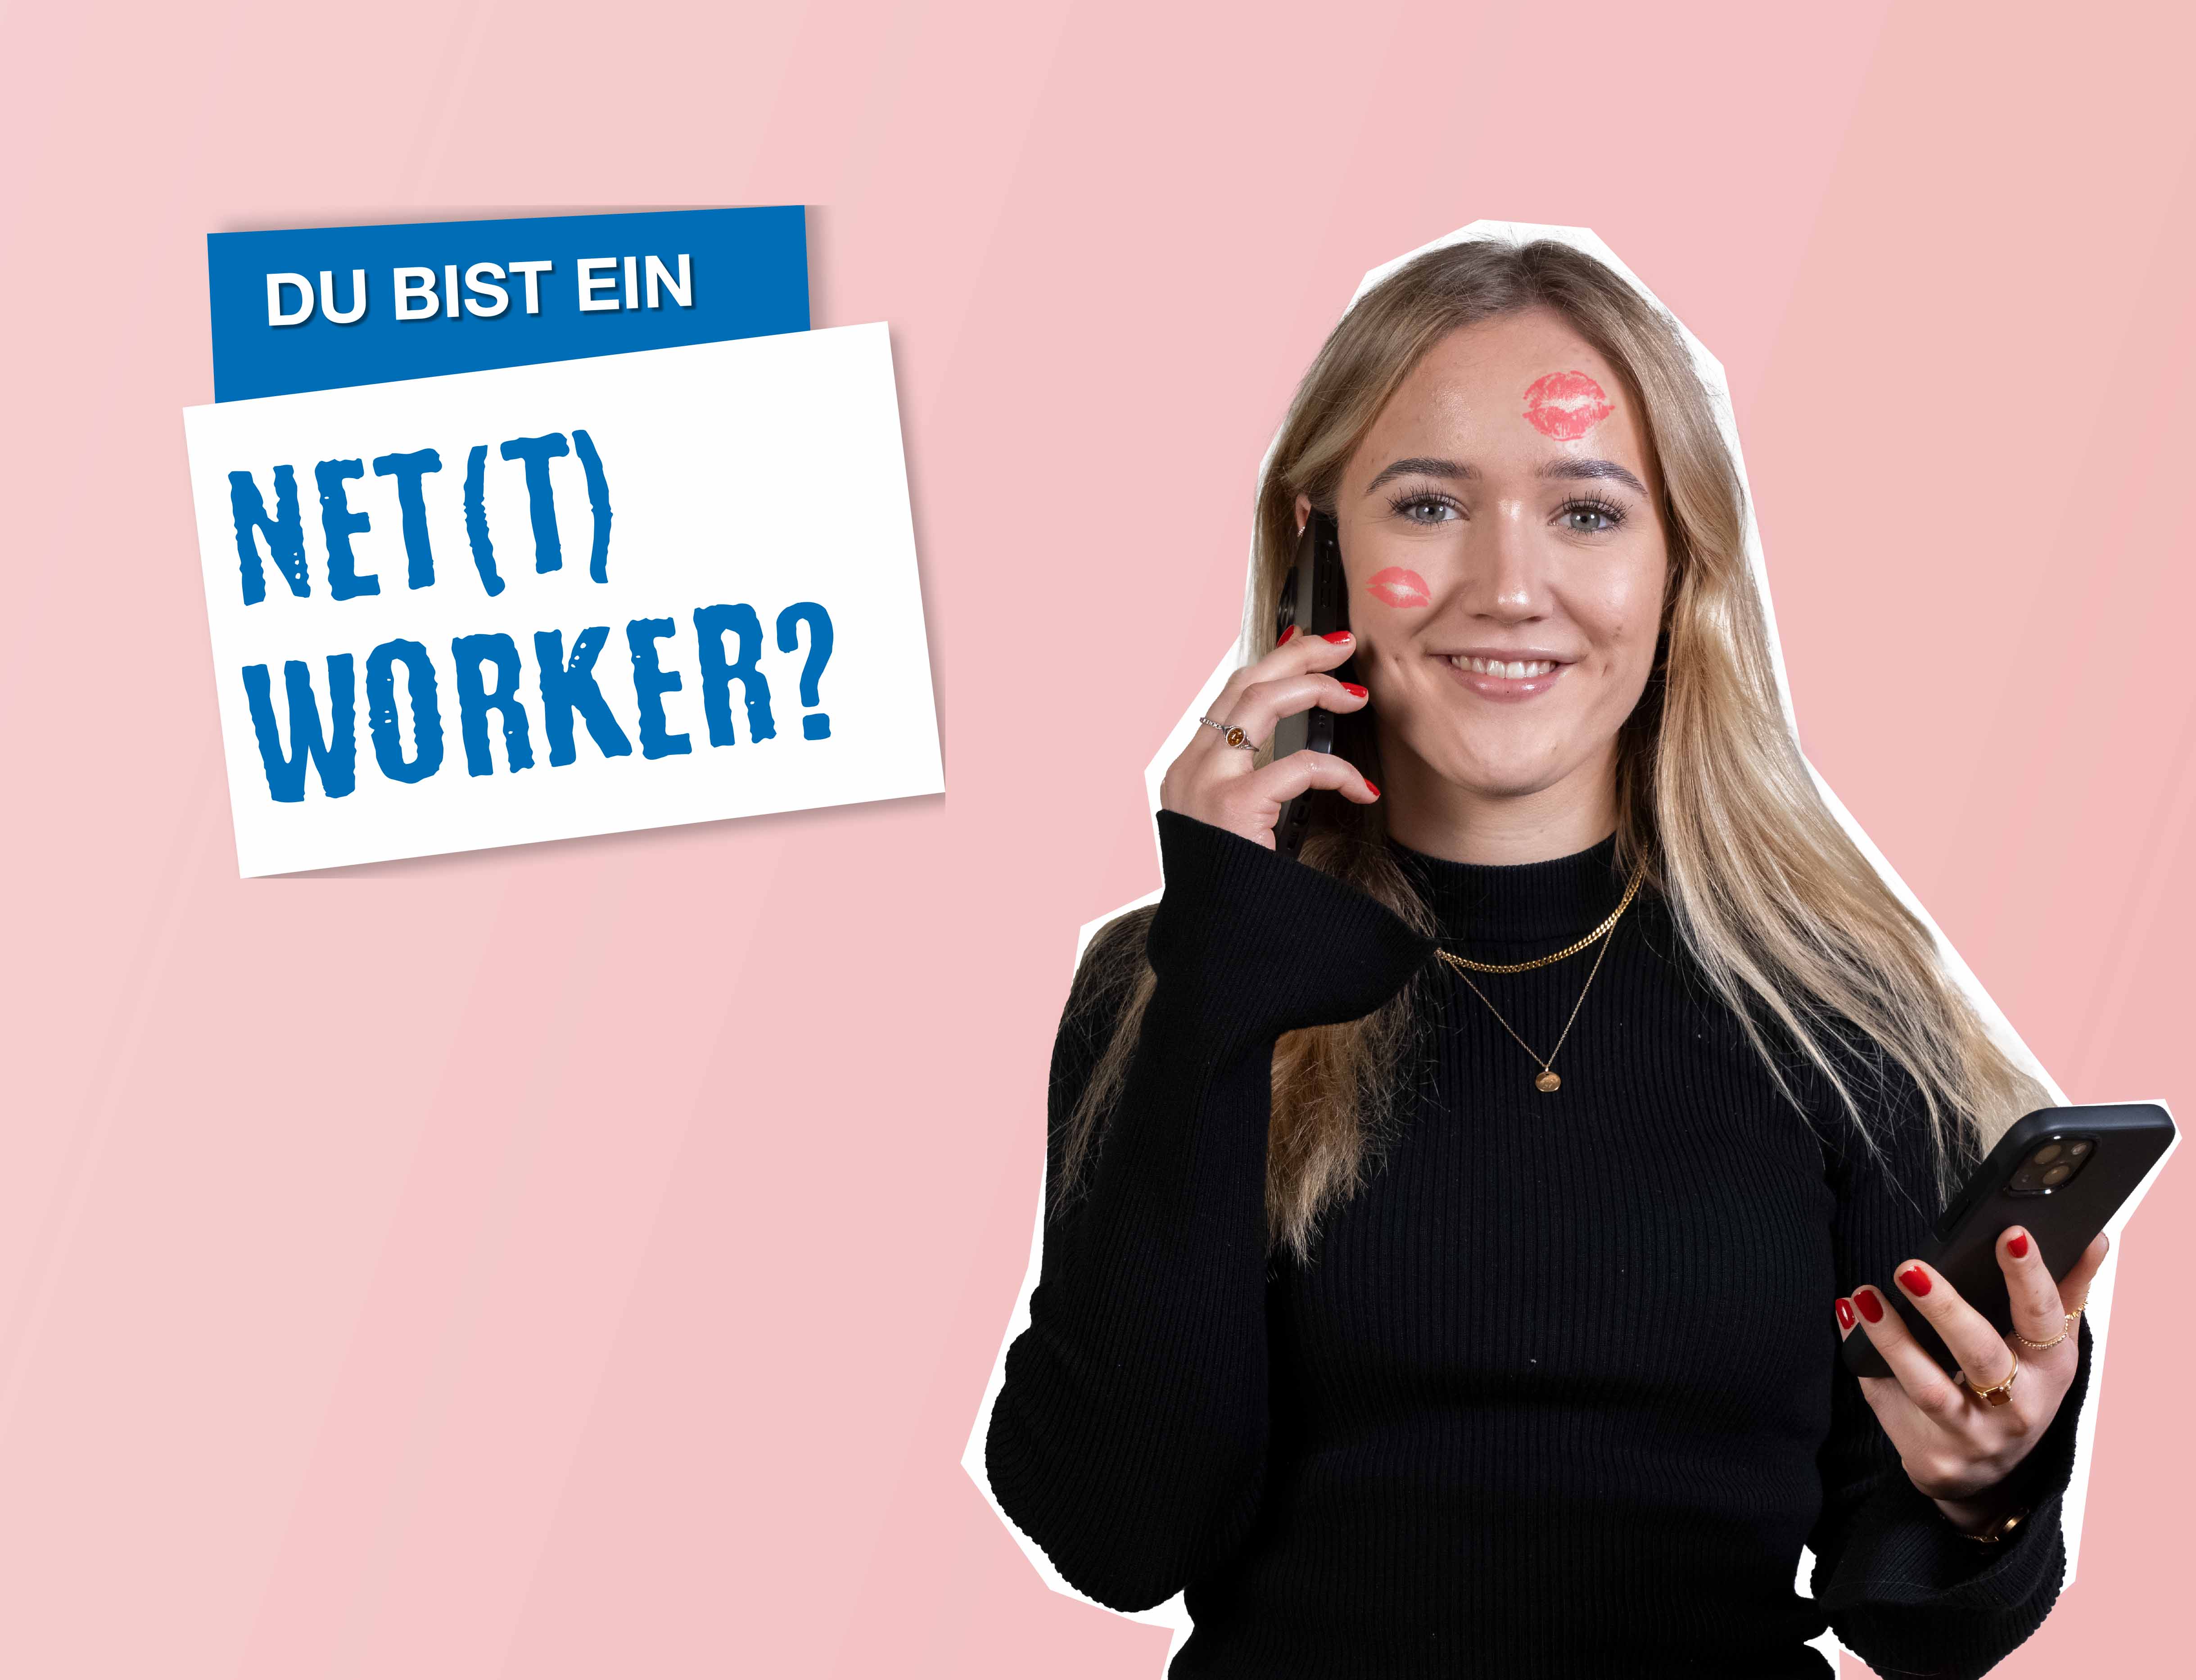 rosaner Hintergrund, rechts steht eine junge Frau, die telefoniert und in der anderen Hand ein Handy hält, im Gesicht hat sie ein paar Kussmunde, links steht "Du bist ein Net(t)worker?"